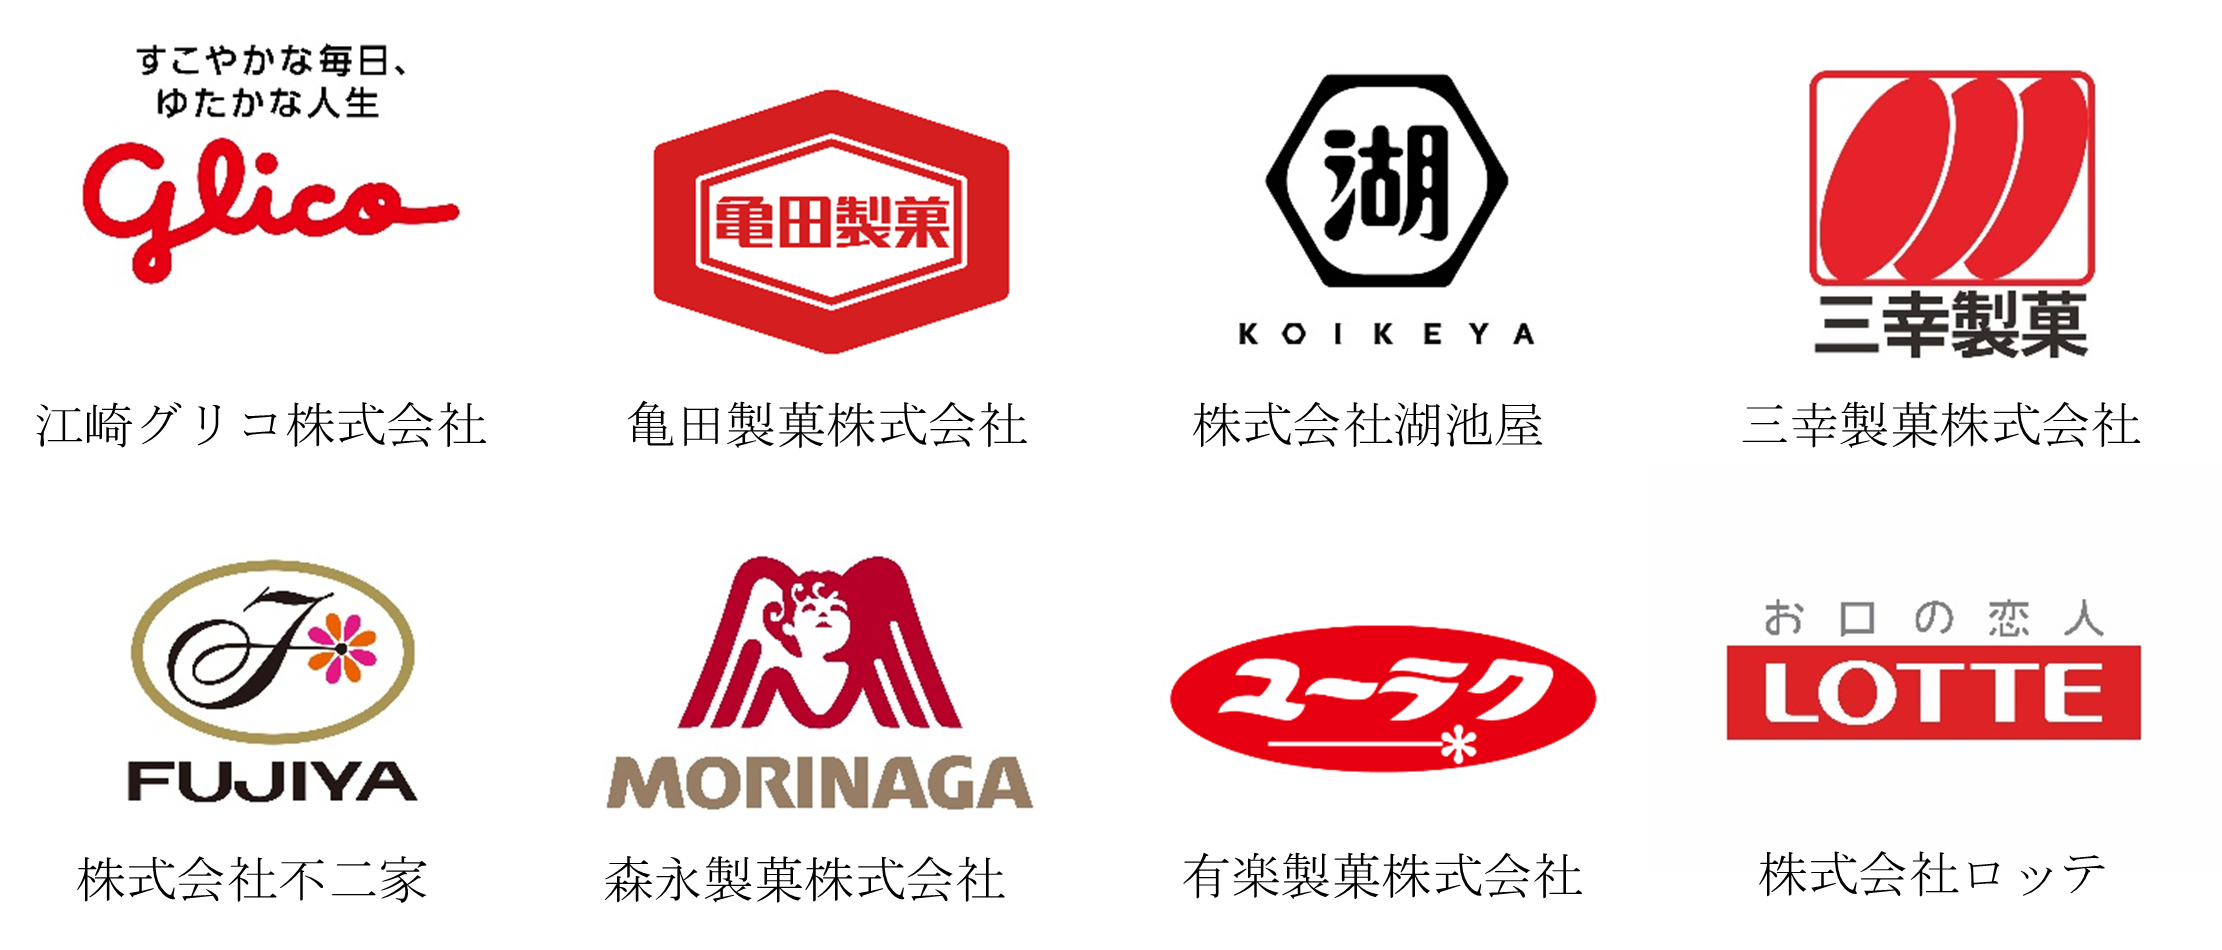 協力企業8社のロゴ